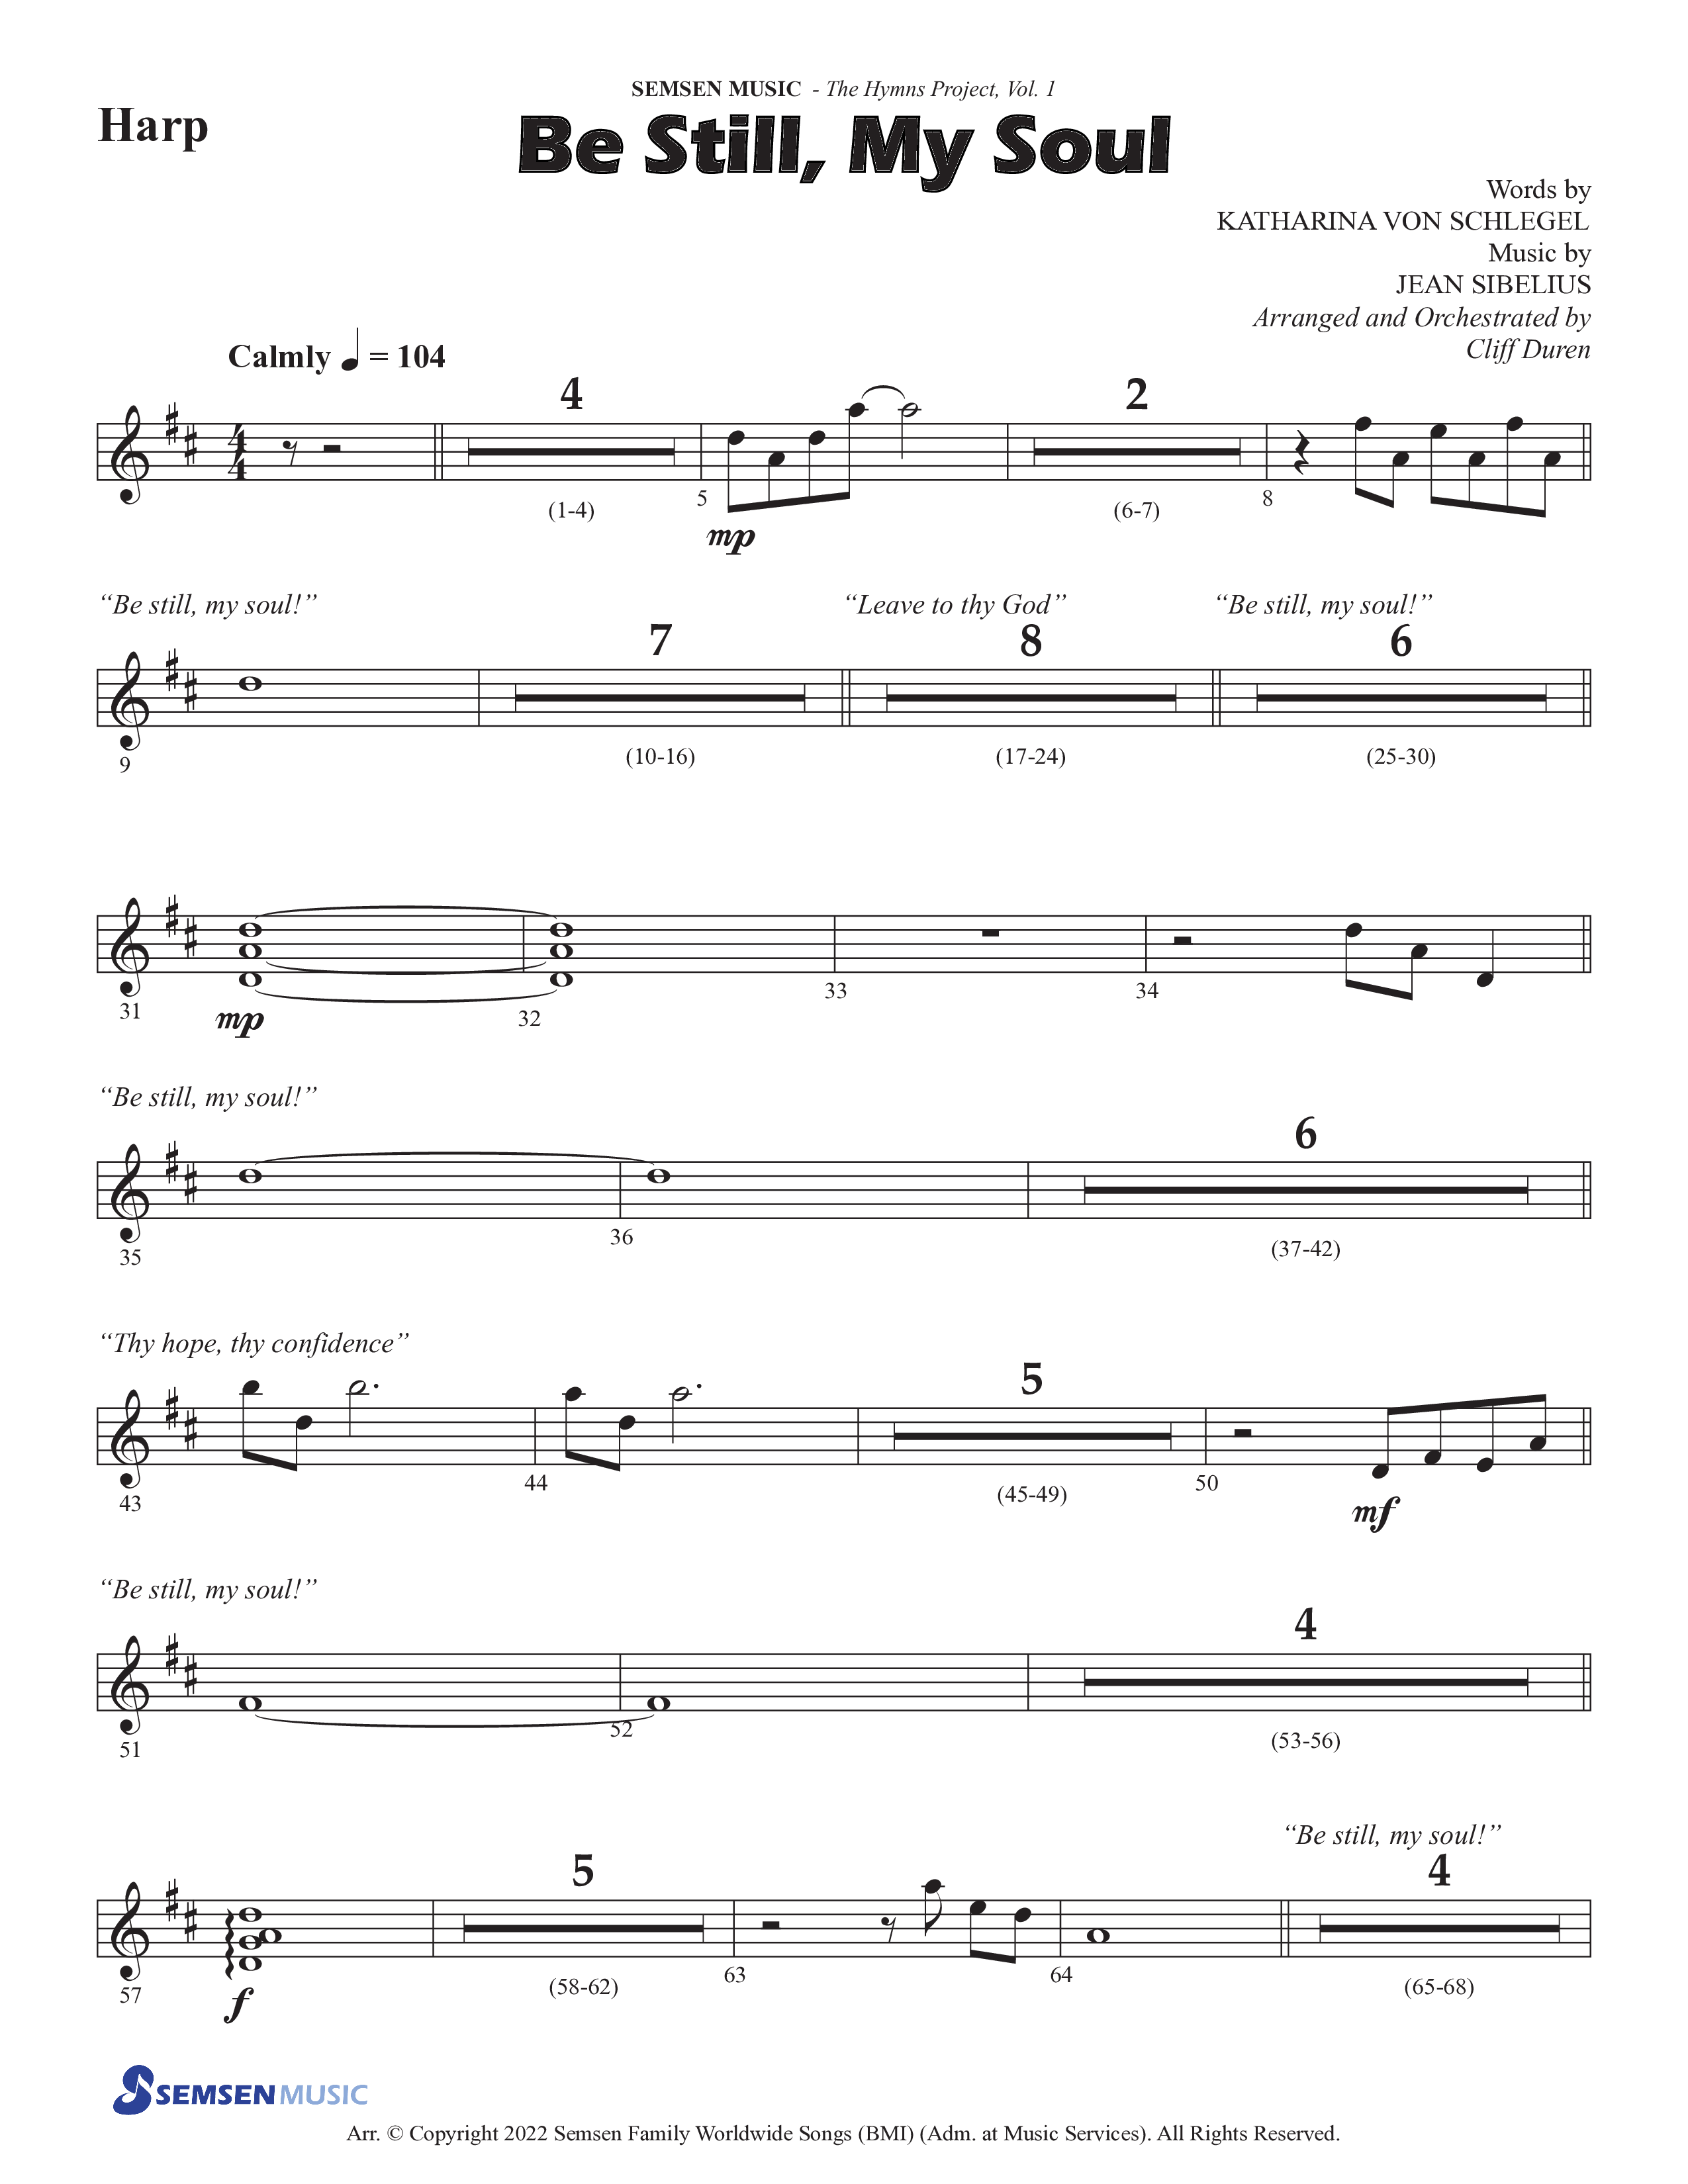 Be Still My Soul (Choral Anthem SATB) Harp (Semsen Music / Arr. Cliff Duren)